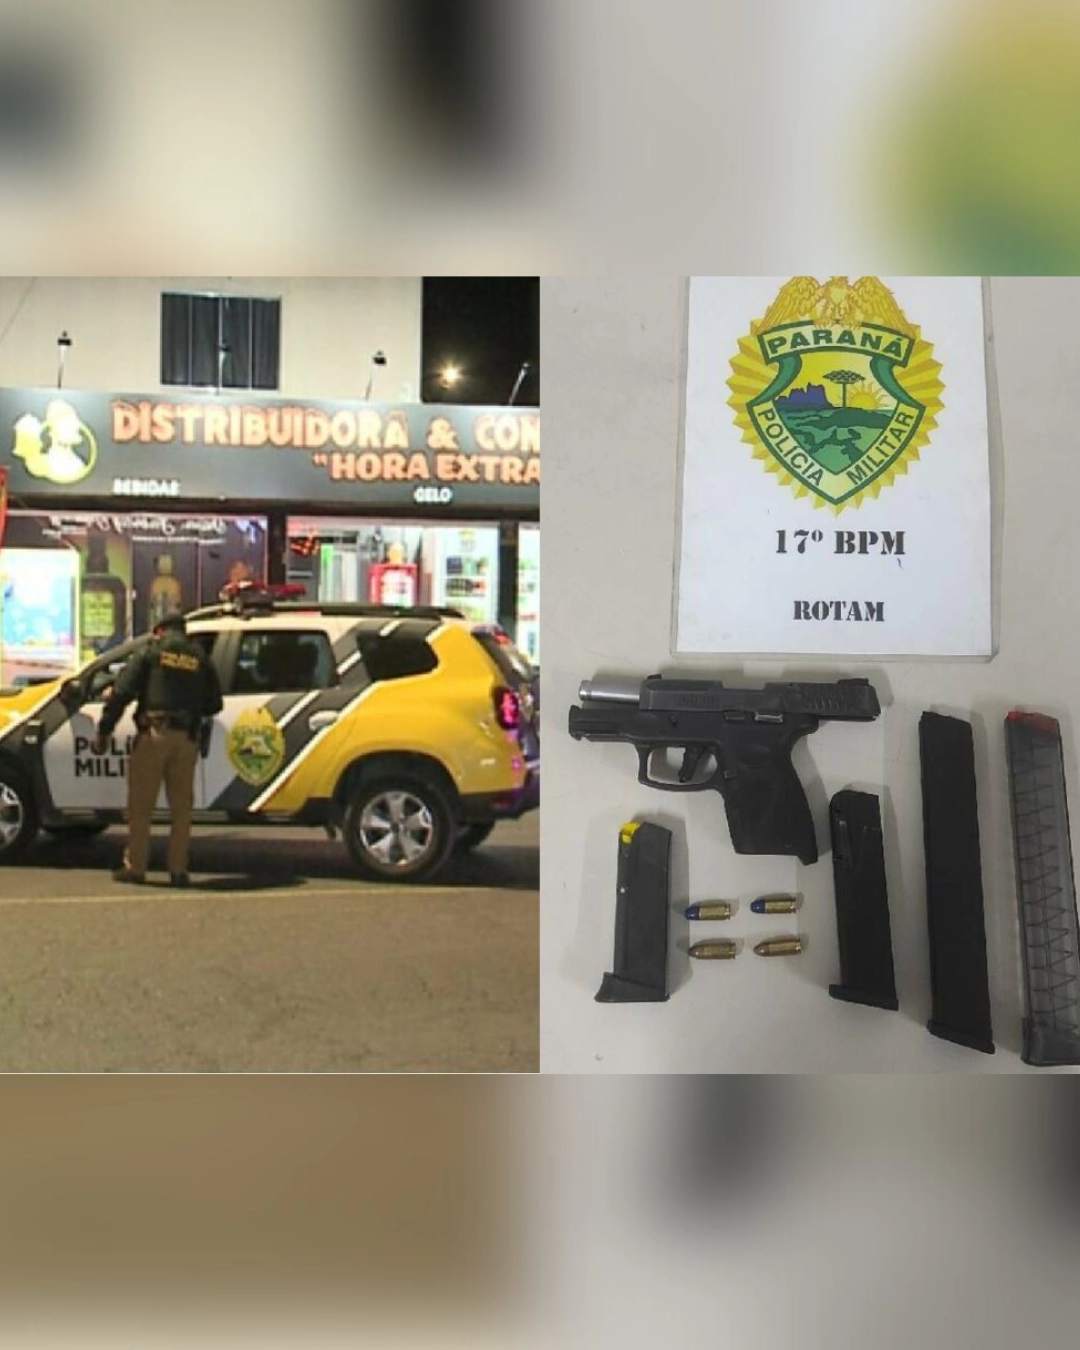 Imagem de destaque - Polícia prende suspeitos de homicídio em distribuidora em São José dos Pinhais